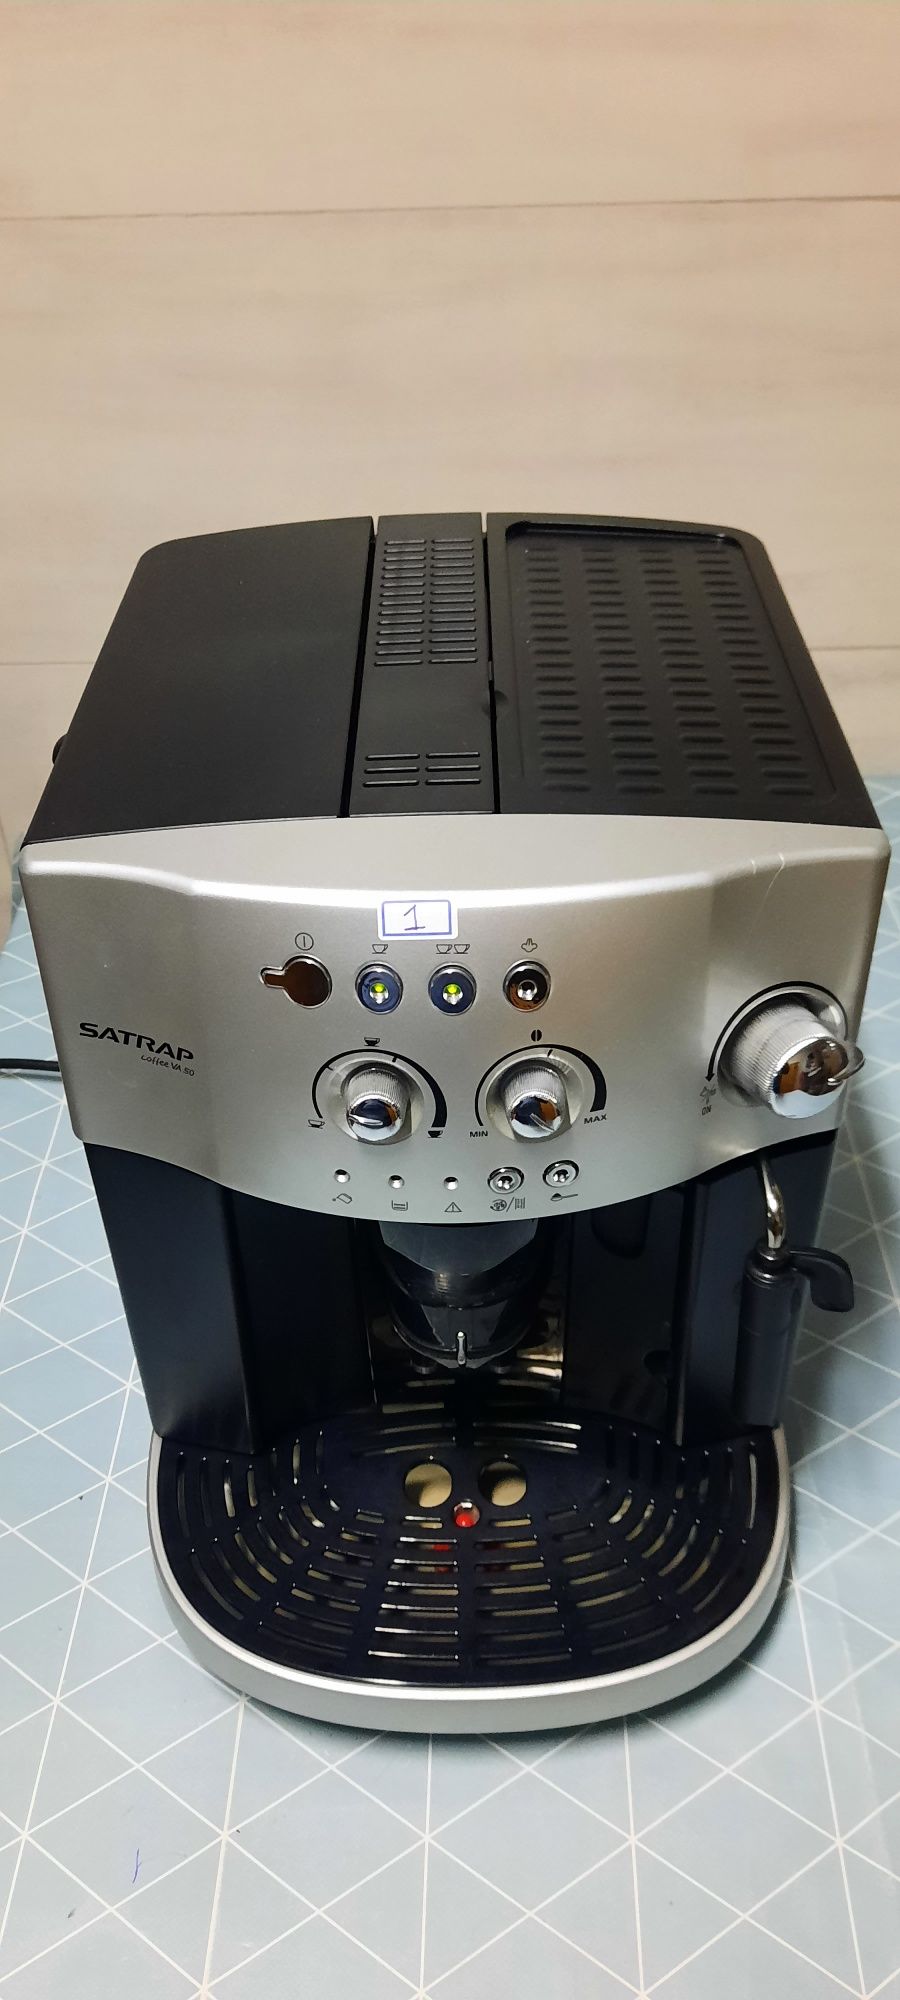 Máquina de café delonghi/satrap va 50